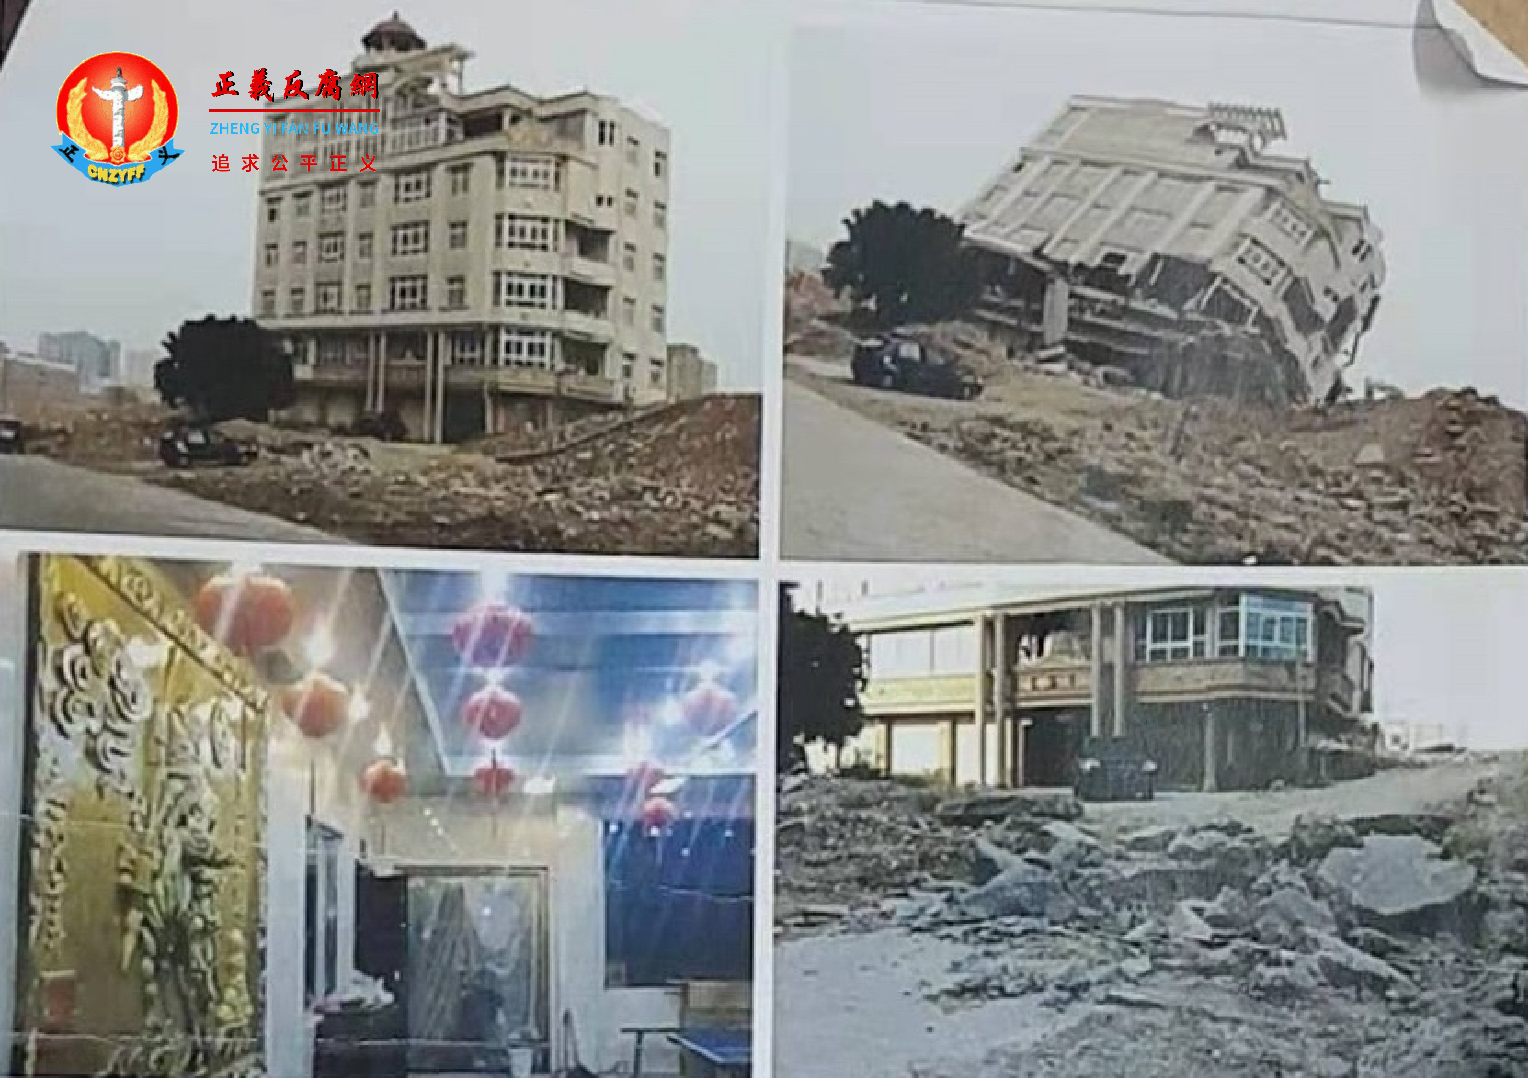 华侨黄环球先生合法7层欧式建筑房宅被以违建房强拆。.png